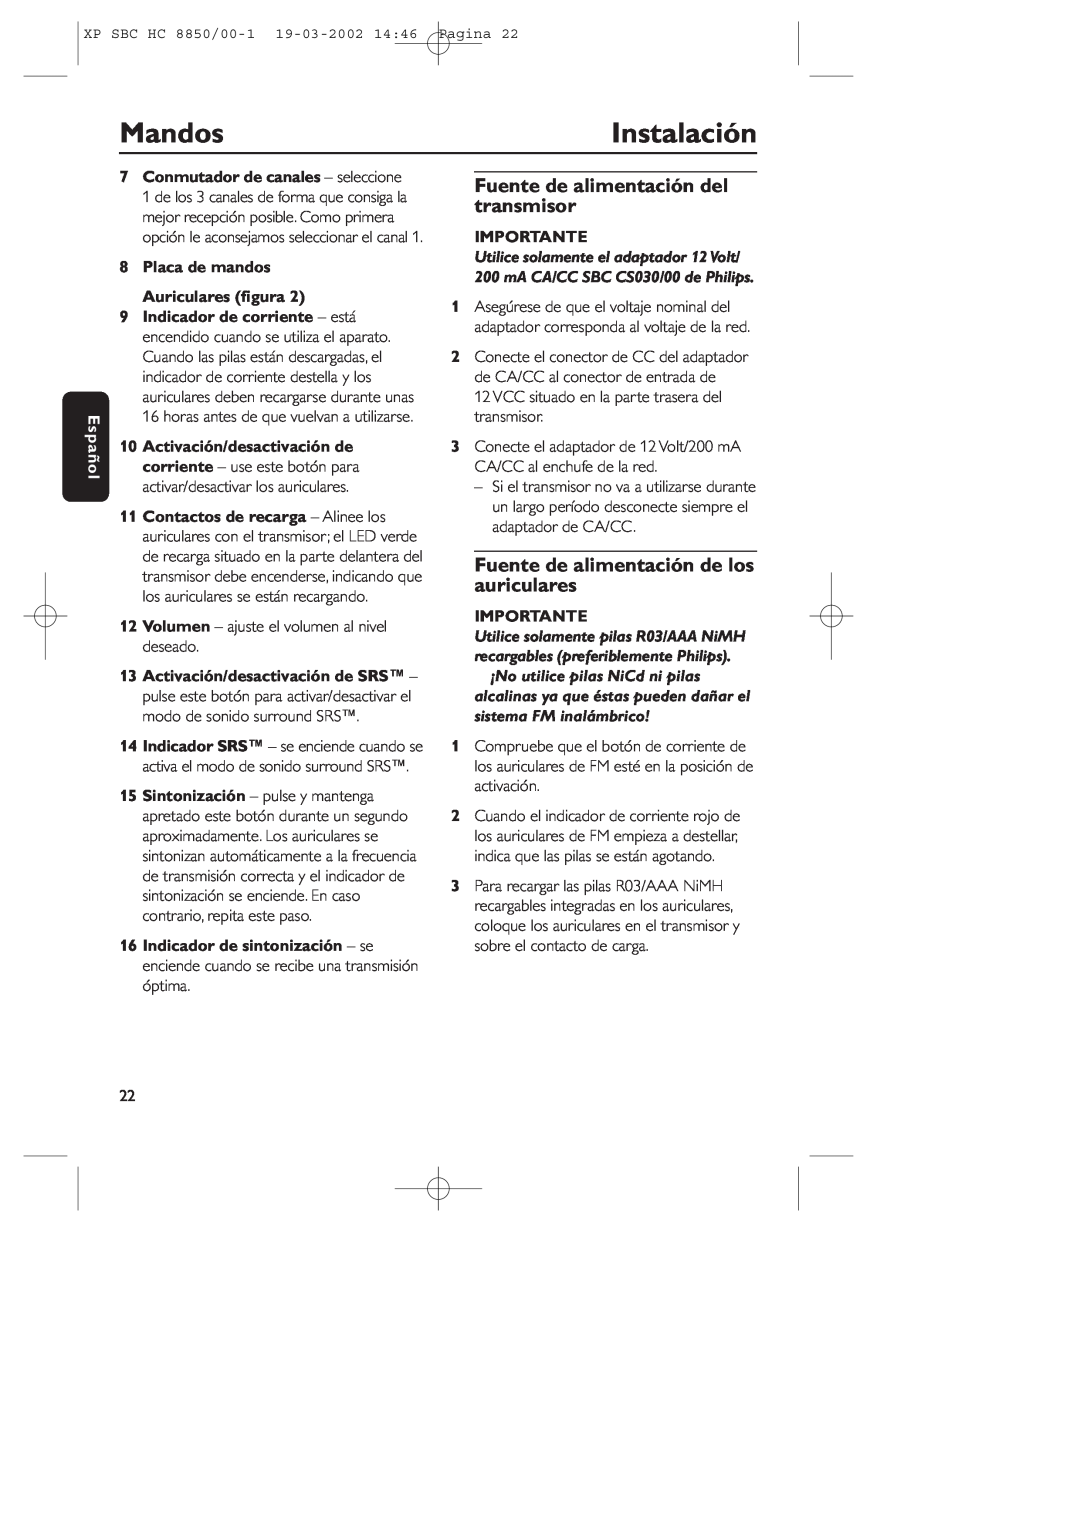 Philips HC8850 manual Mandos, Instalación, Fuente de alimentación del transmisor, Fuente de alimentación de los auriculares 